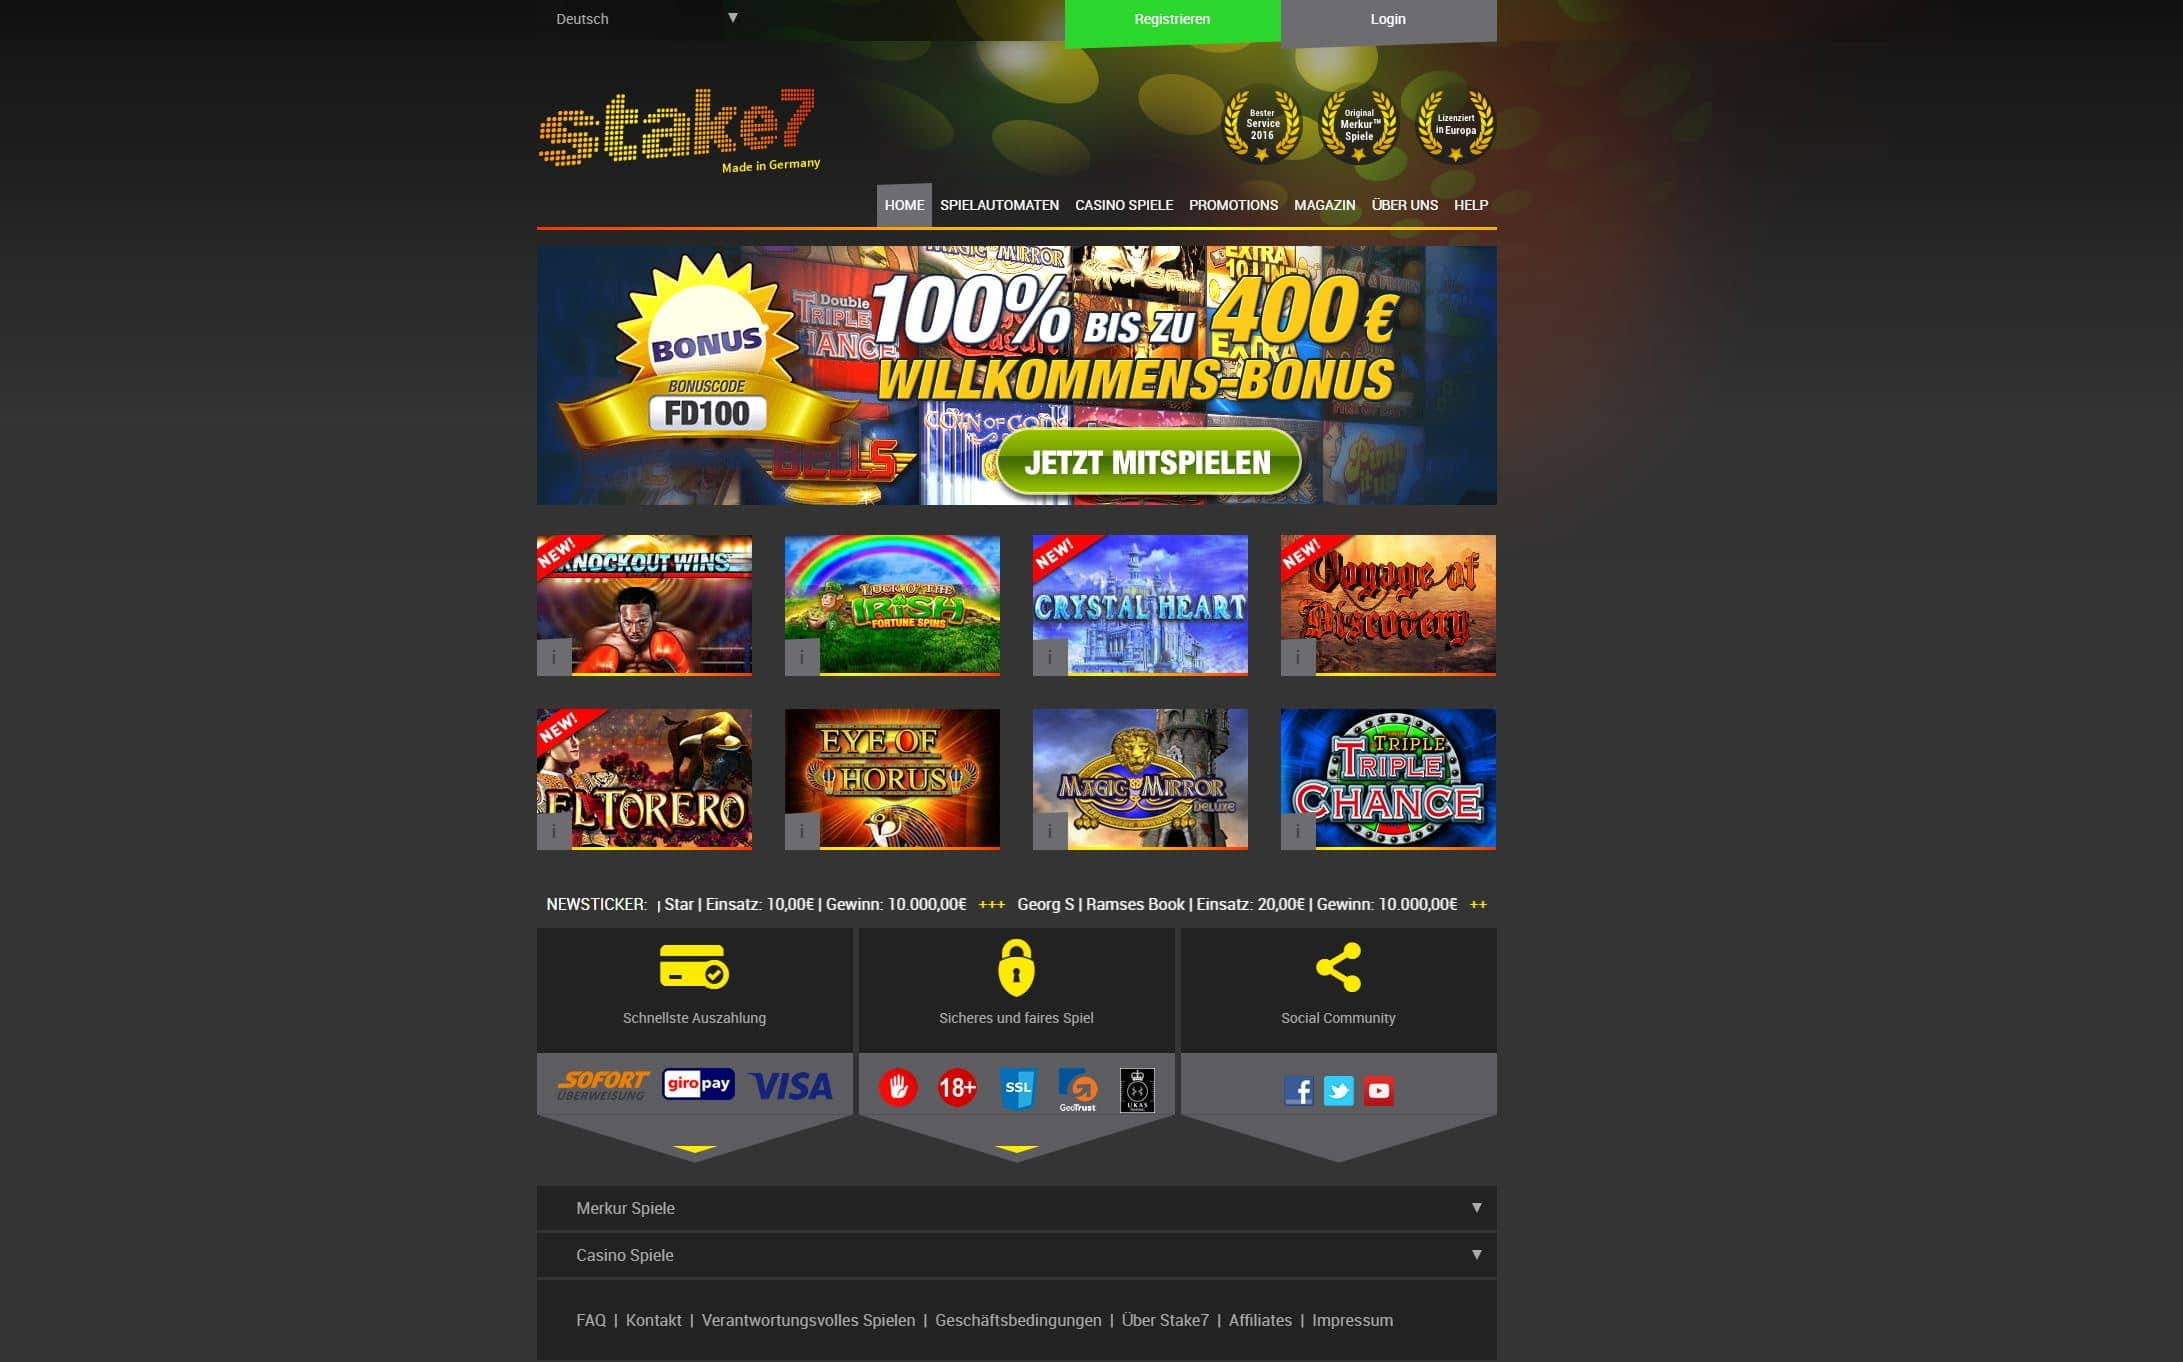 Stake casino фриспины игровые автоматы играть бесплатно и без регистрации с кредитом 10000